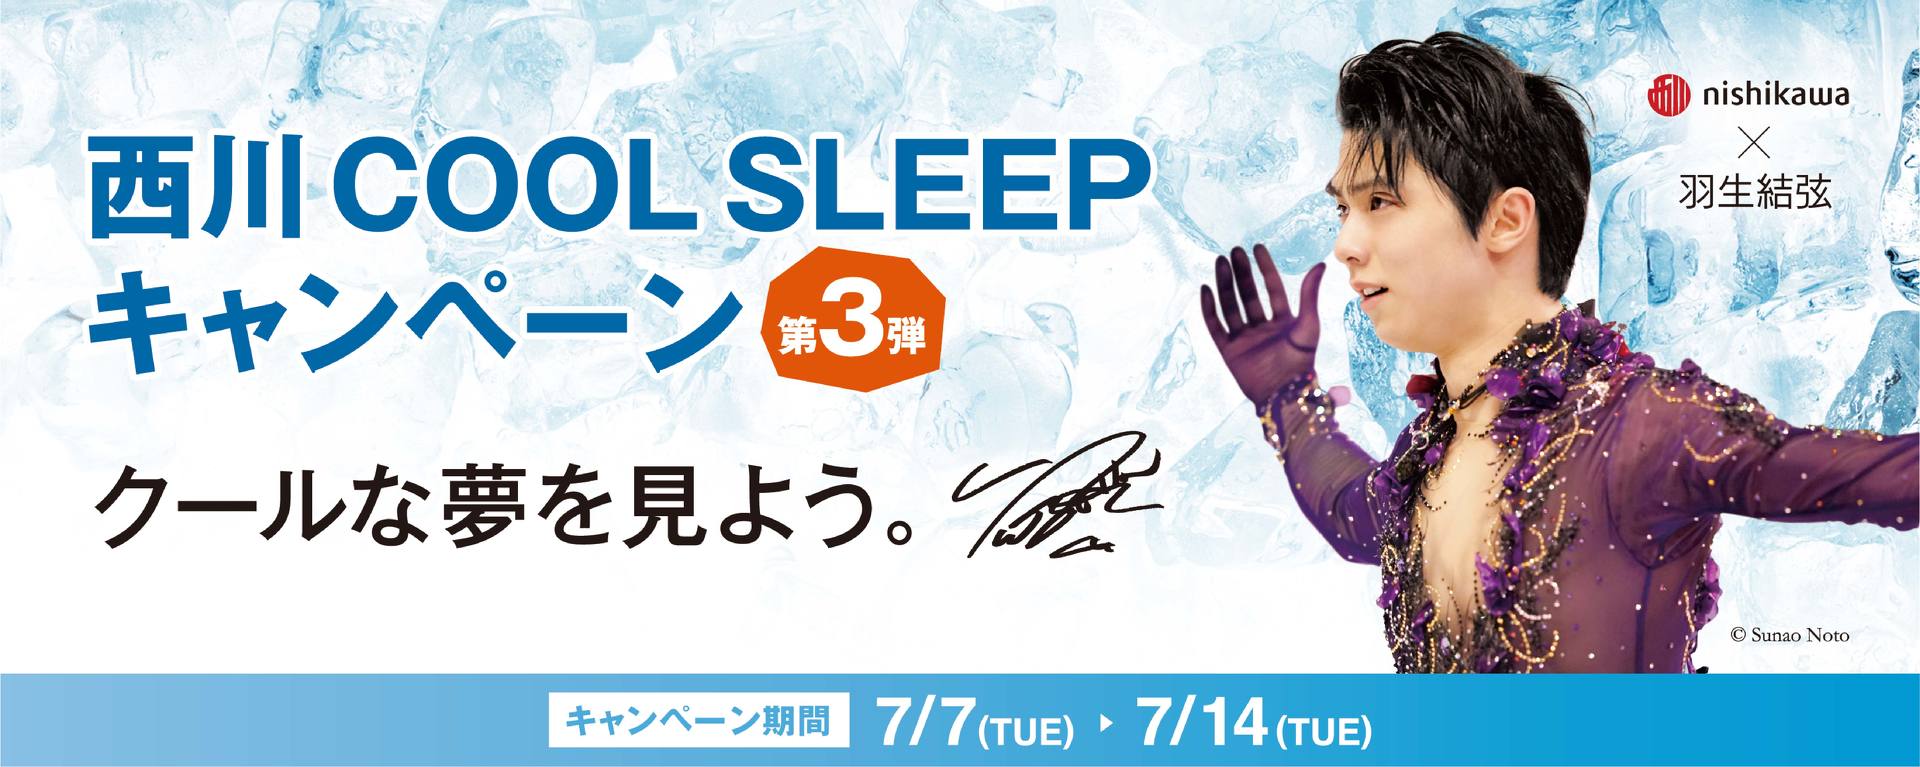 羽生結弦 クリアファイル３枚セット 西川 COOL SLEEP キャンペーン-